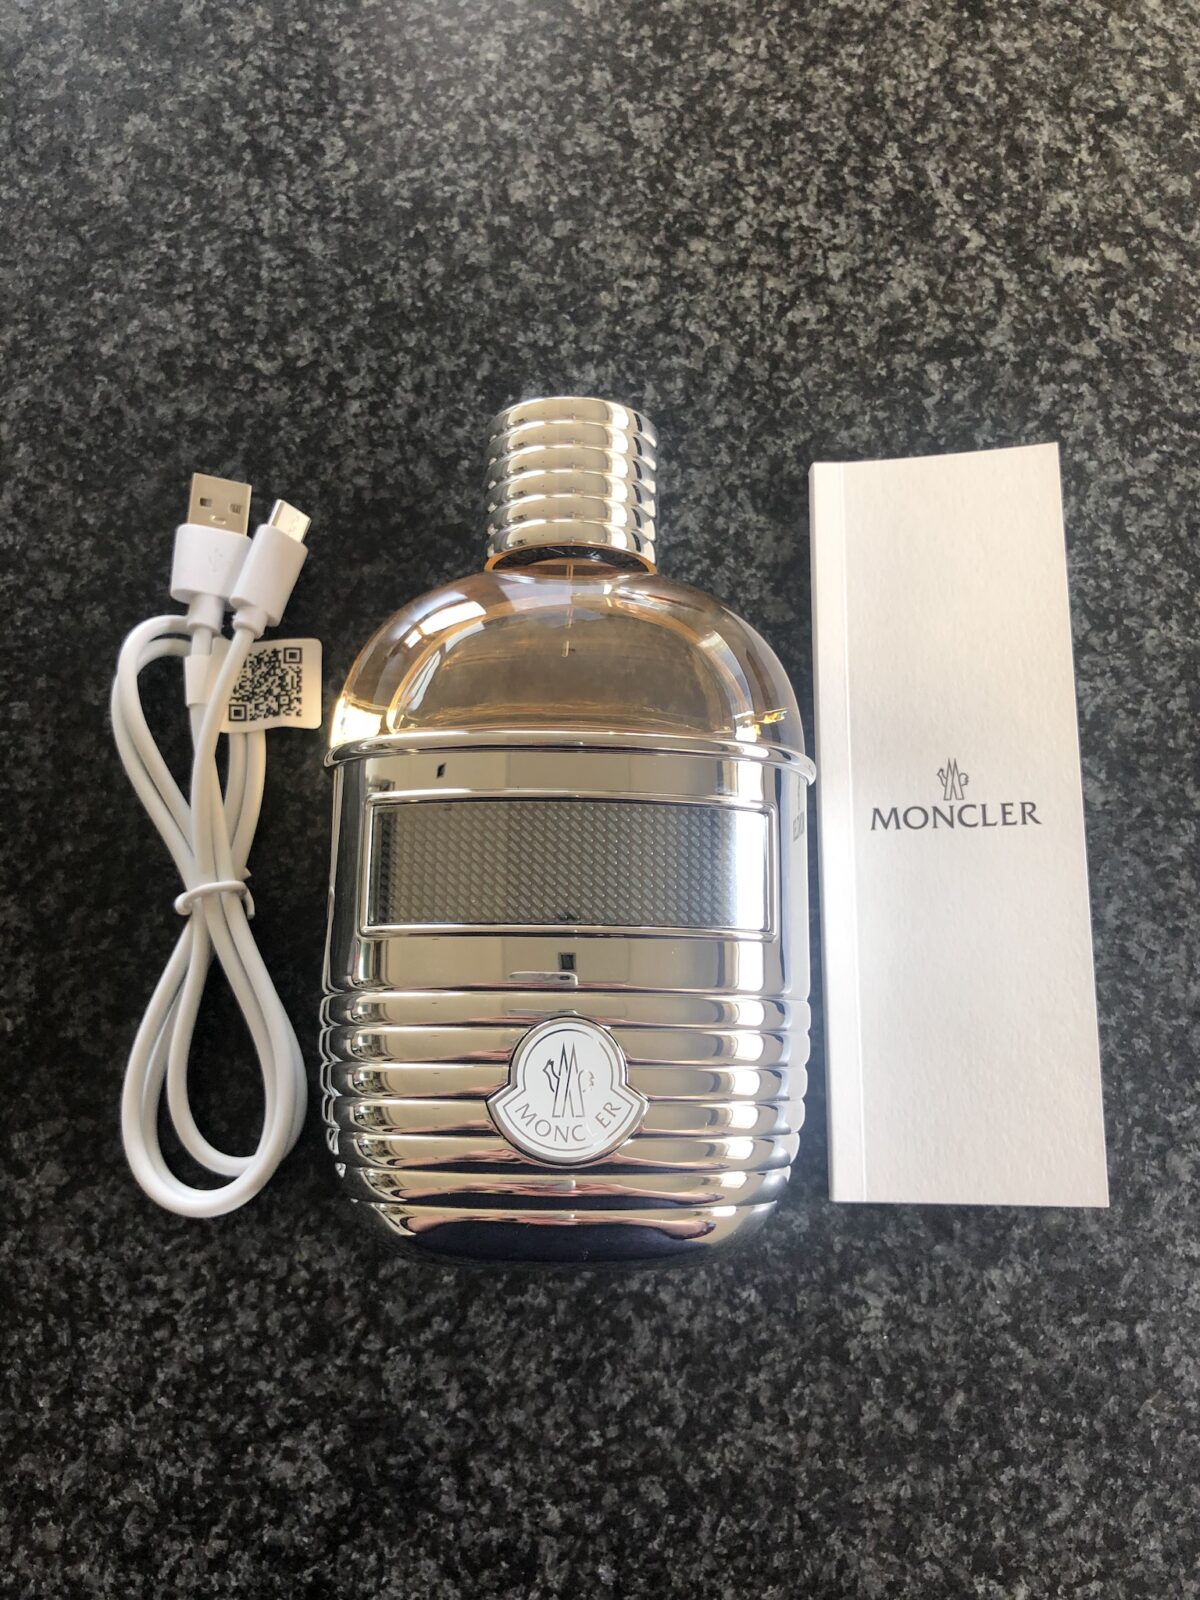 Moncler launches fragrances - WOWwatchers